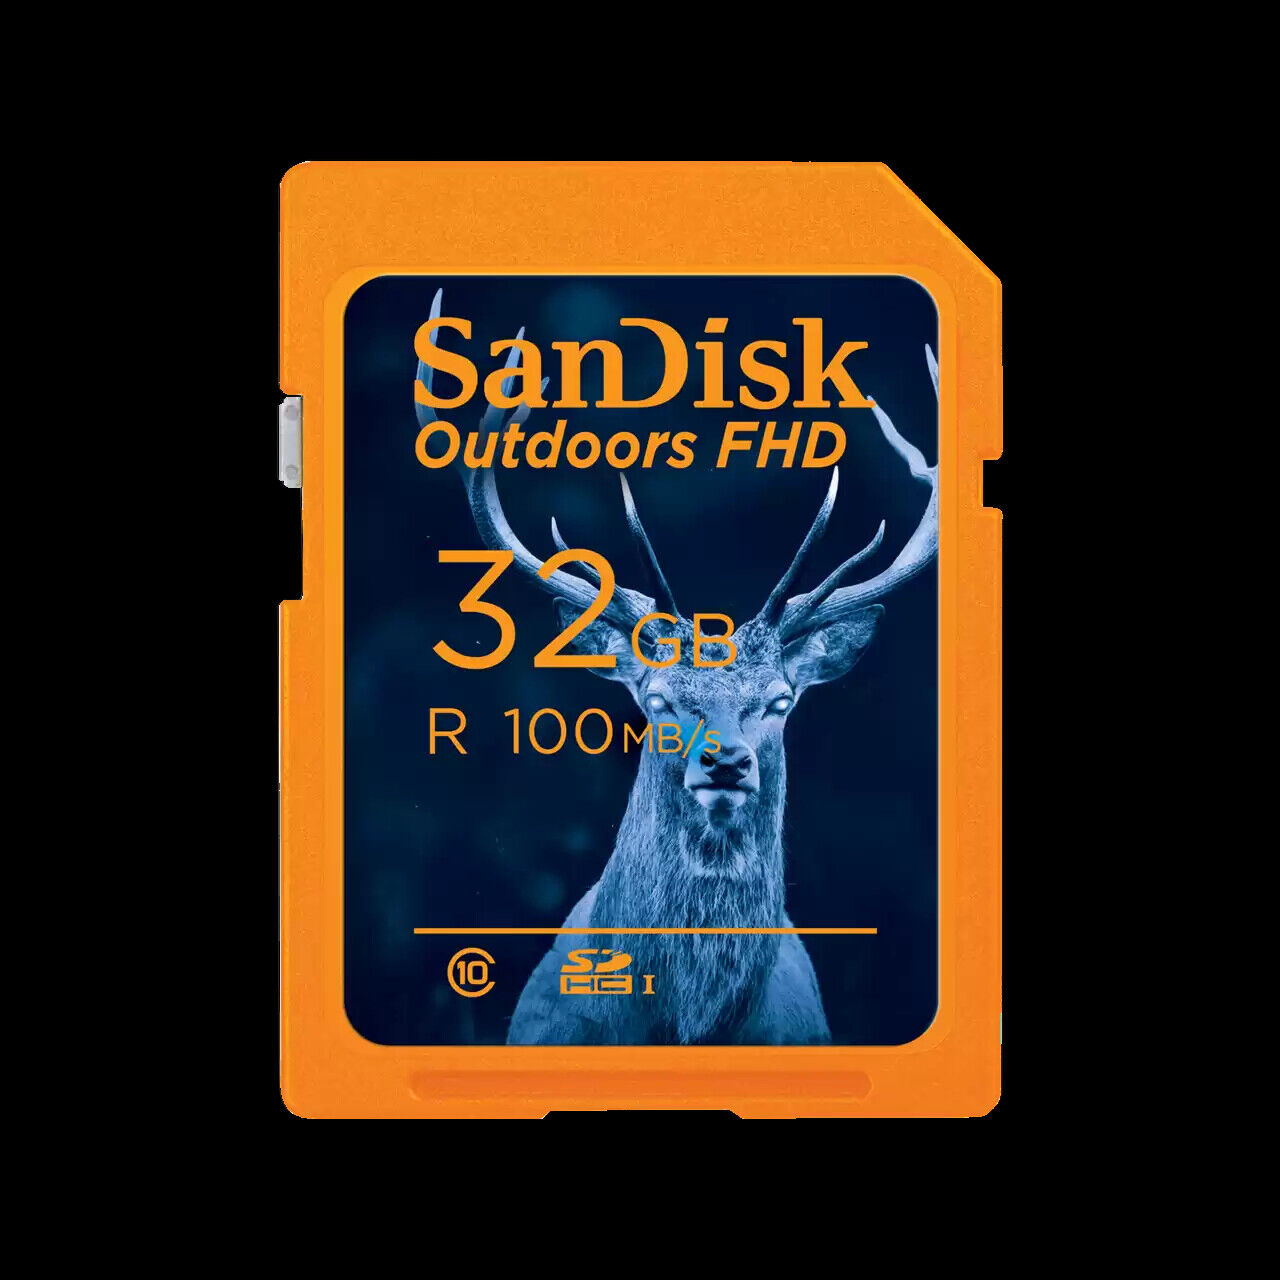 SanDisk 32GB Outdoors FHD microSDXC UHS-I Memory Card - SDSDUNR-032G-GN6VN